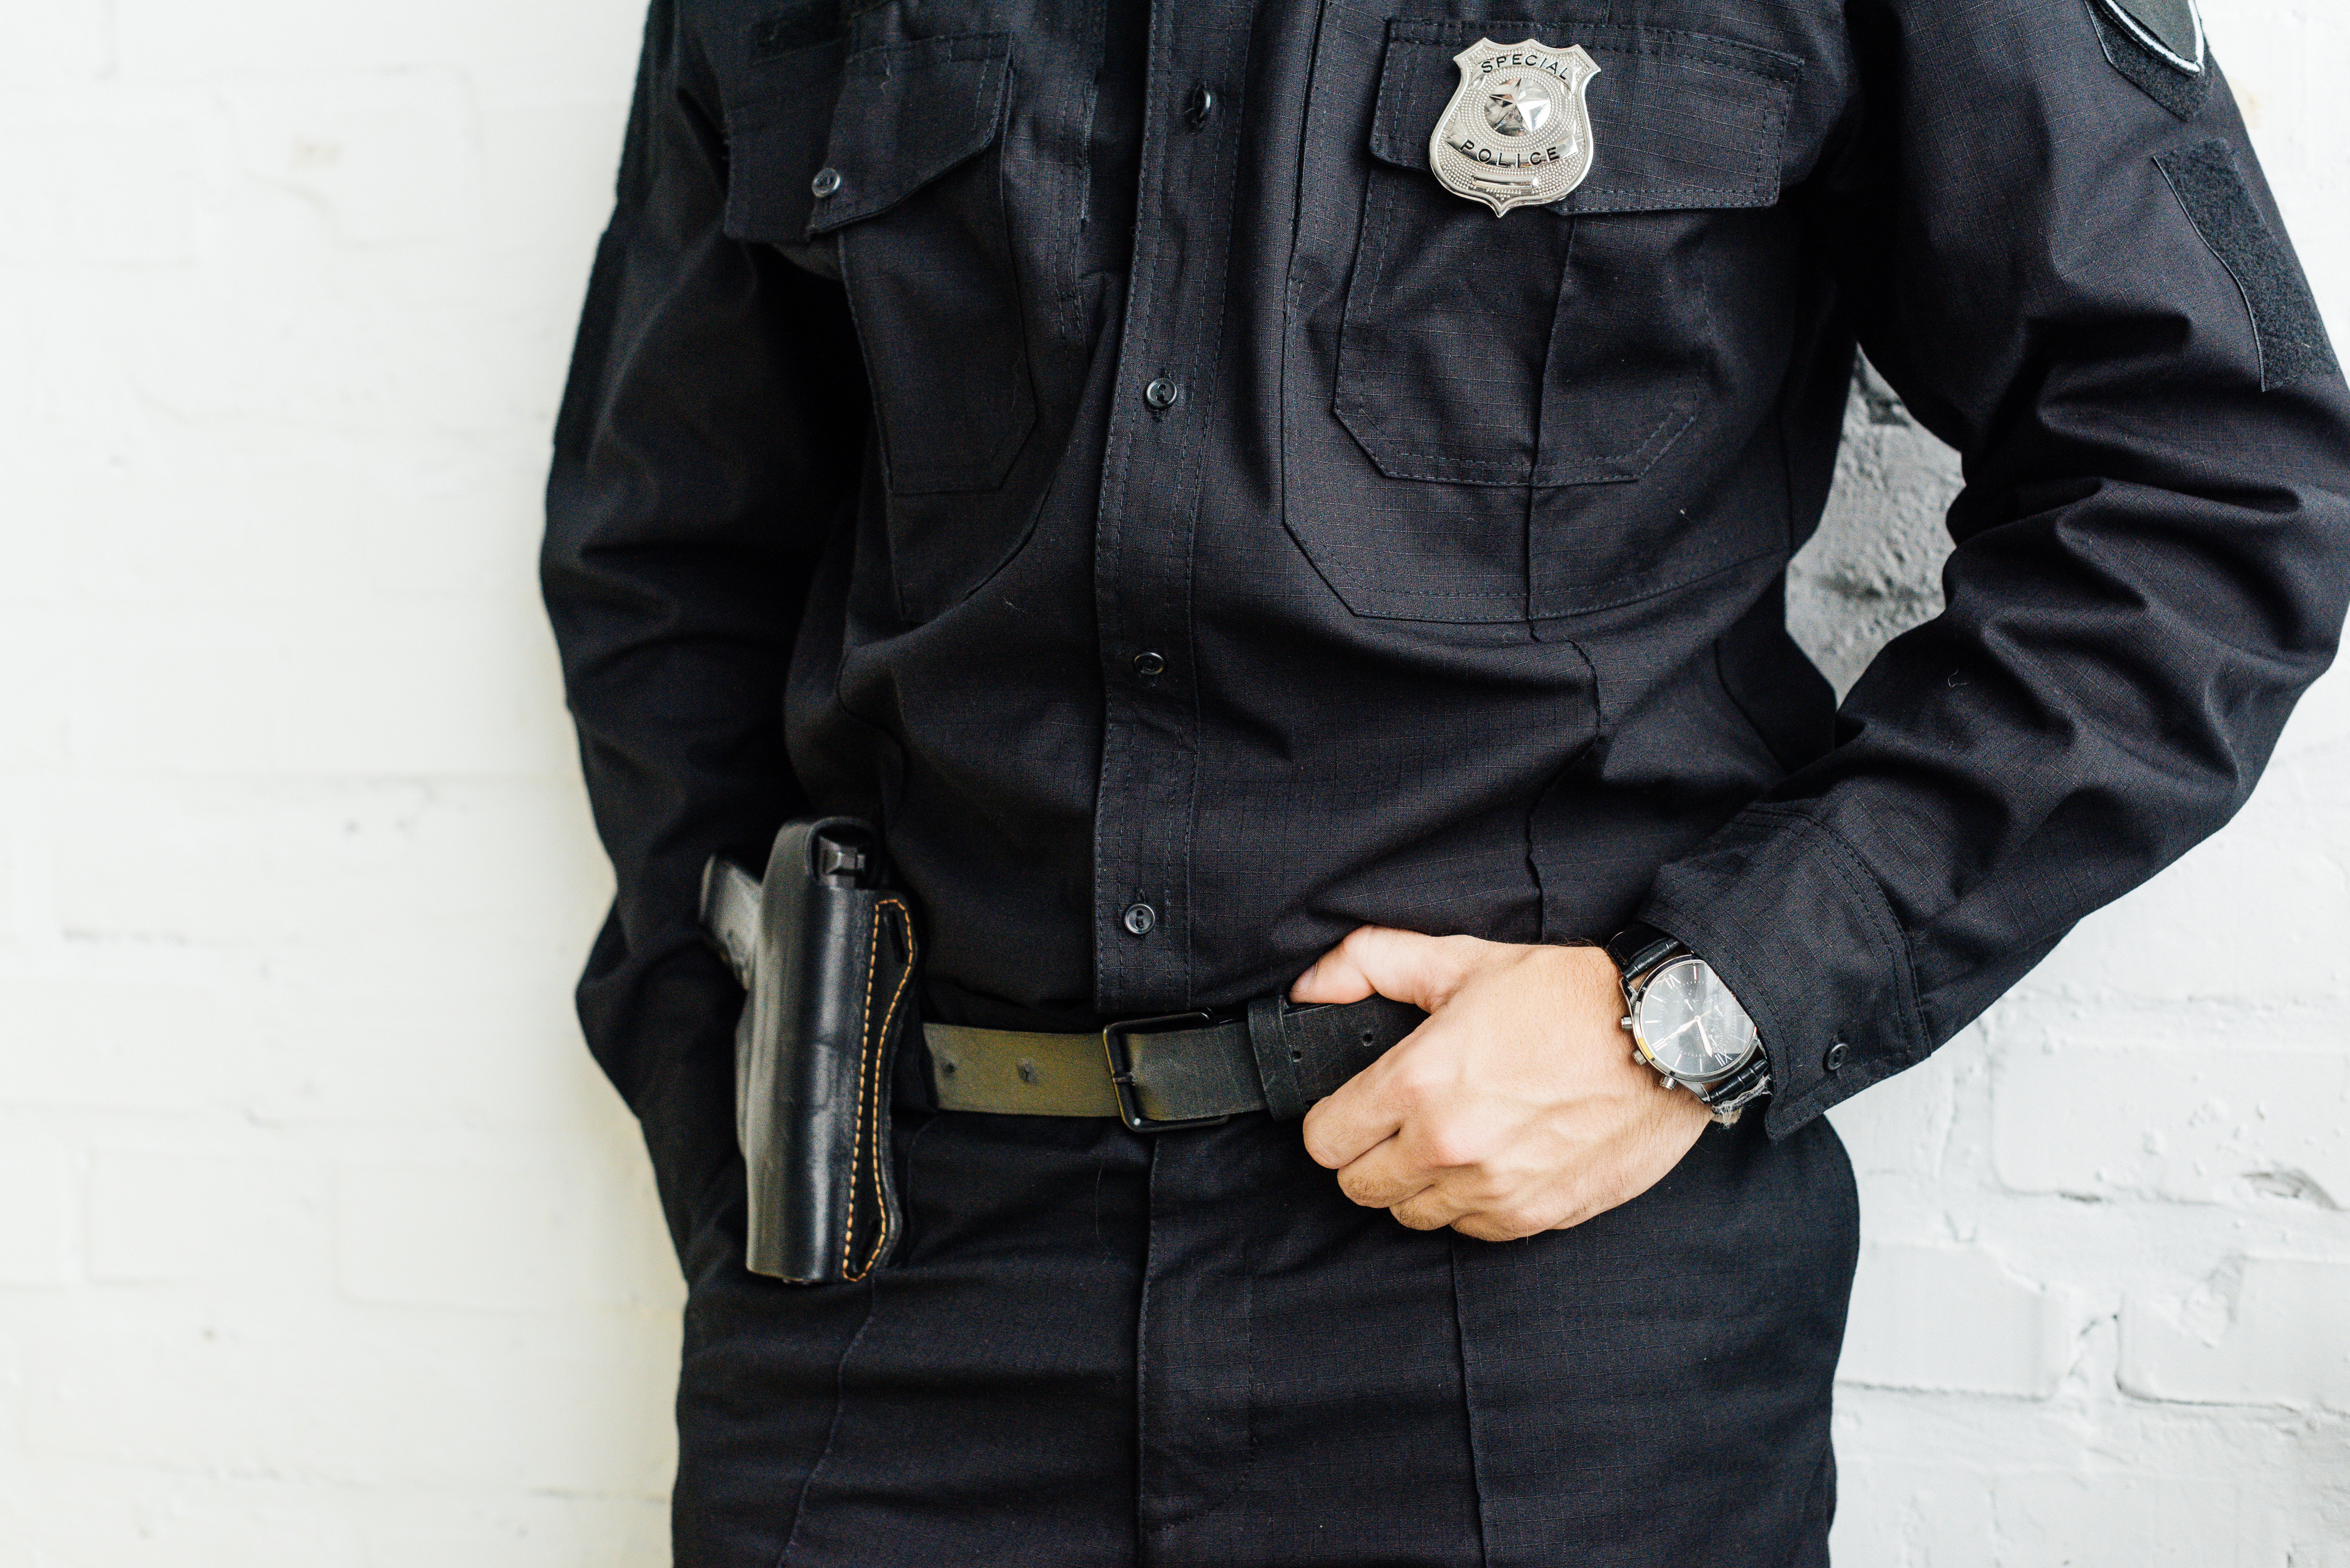 Oficial de policía. | Foto: Shutterstock